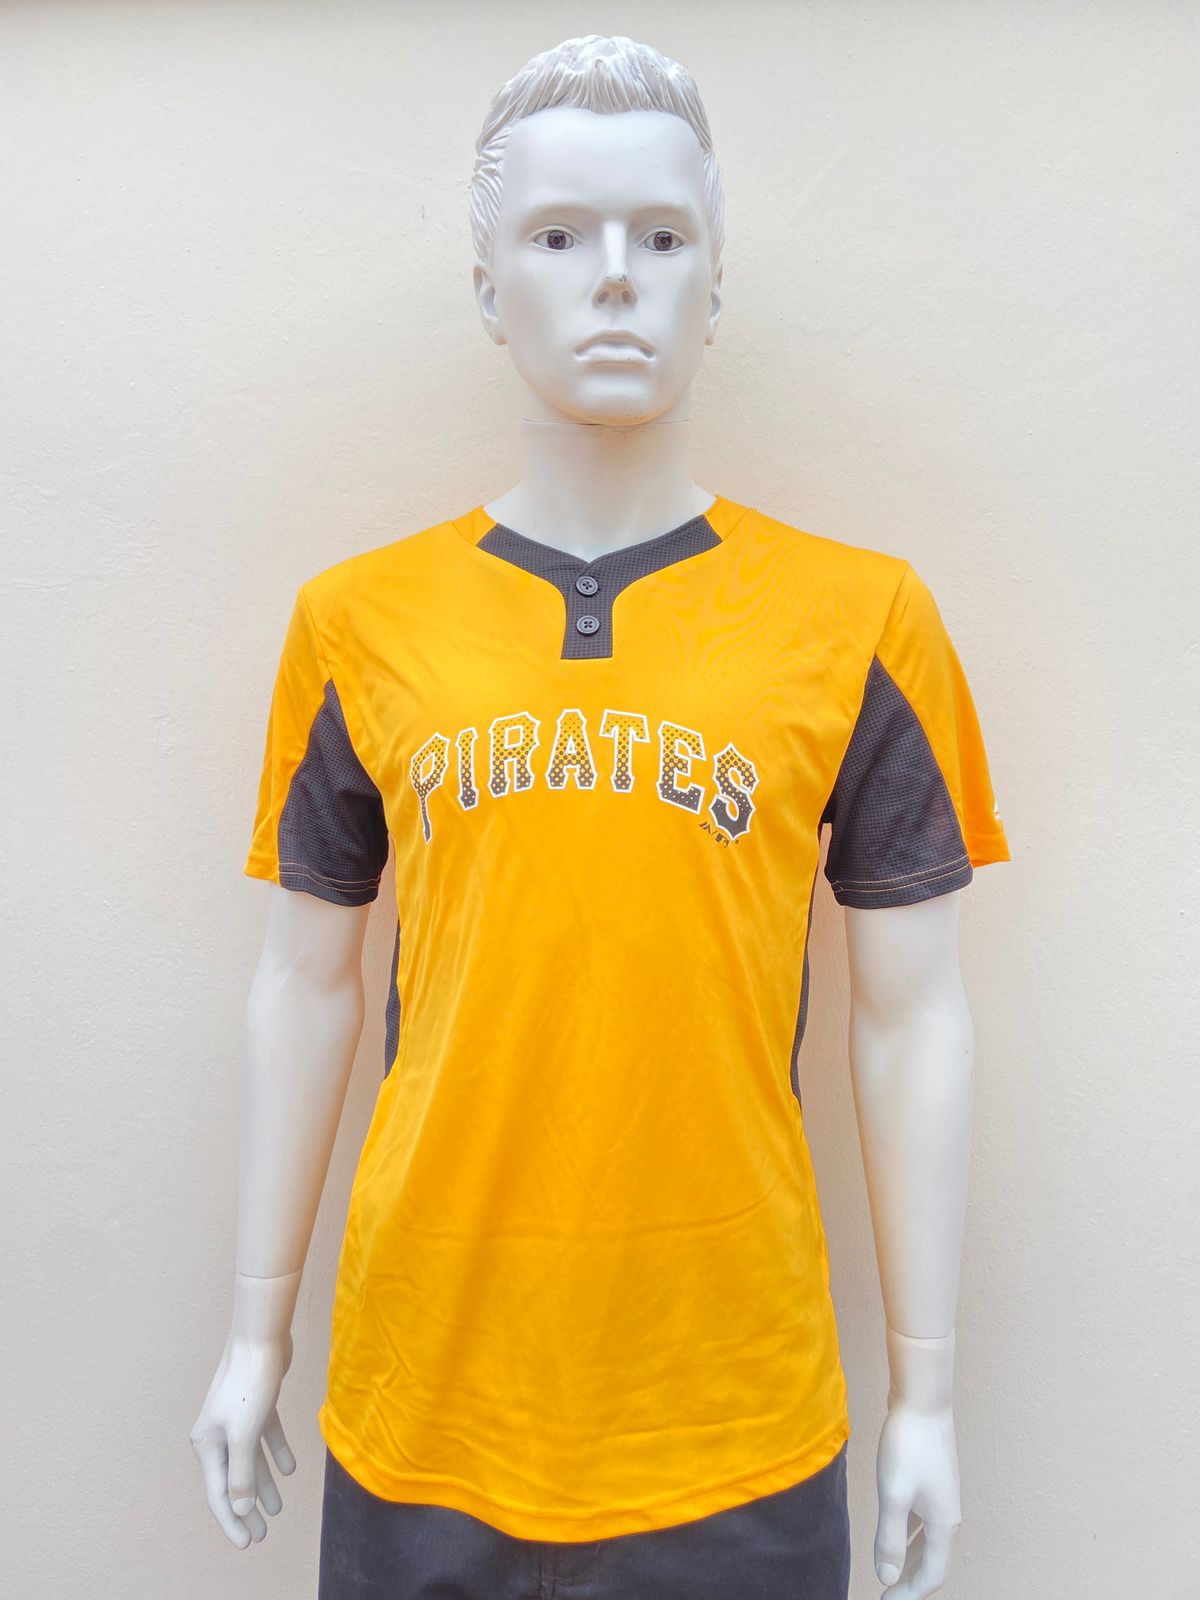 T-shirt Cool Base original color amarillo letras en el centro del equipo béisbol pirates con color negro en las magas , cuello?